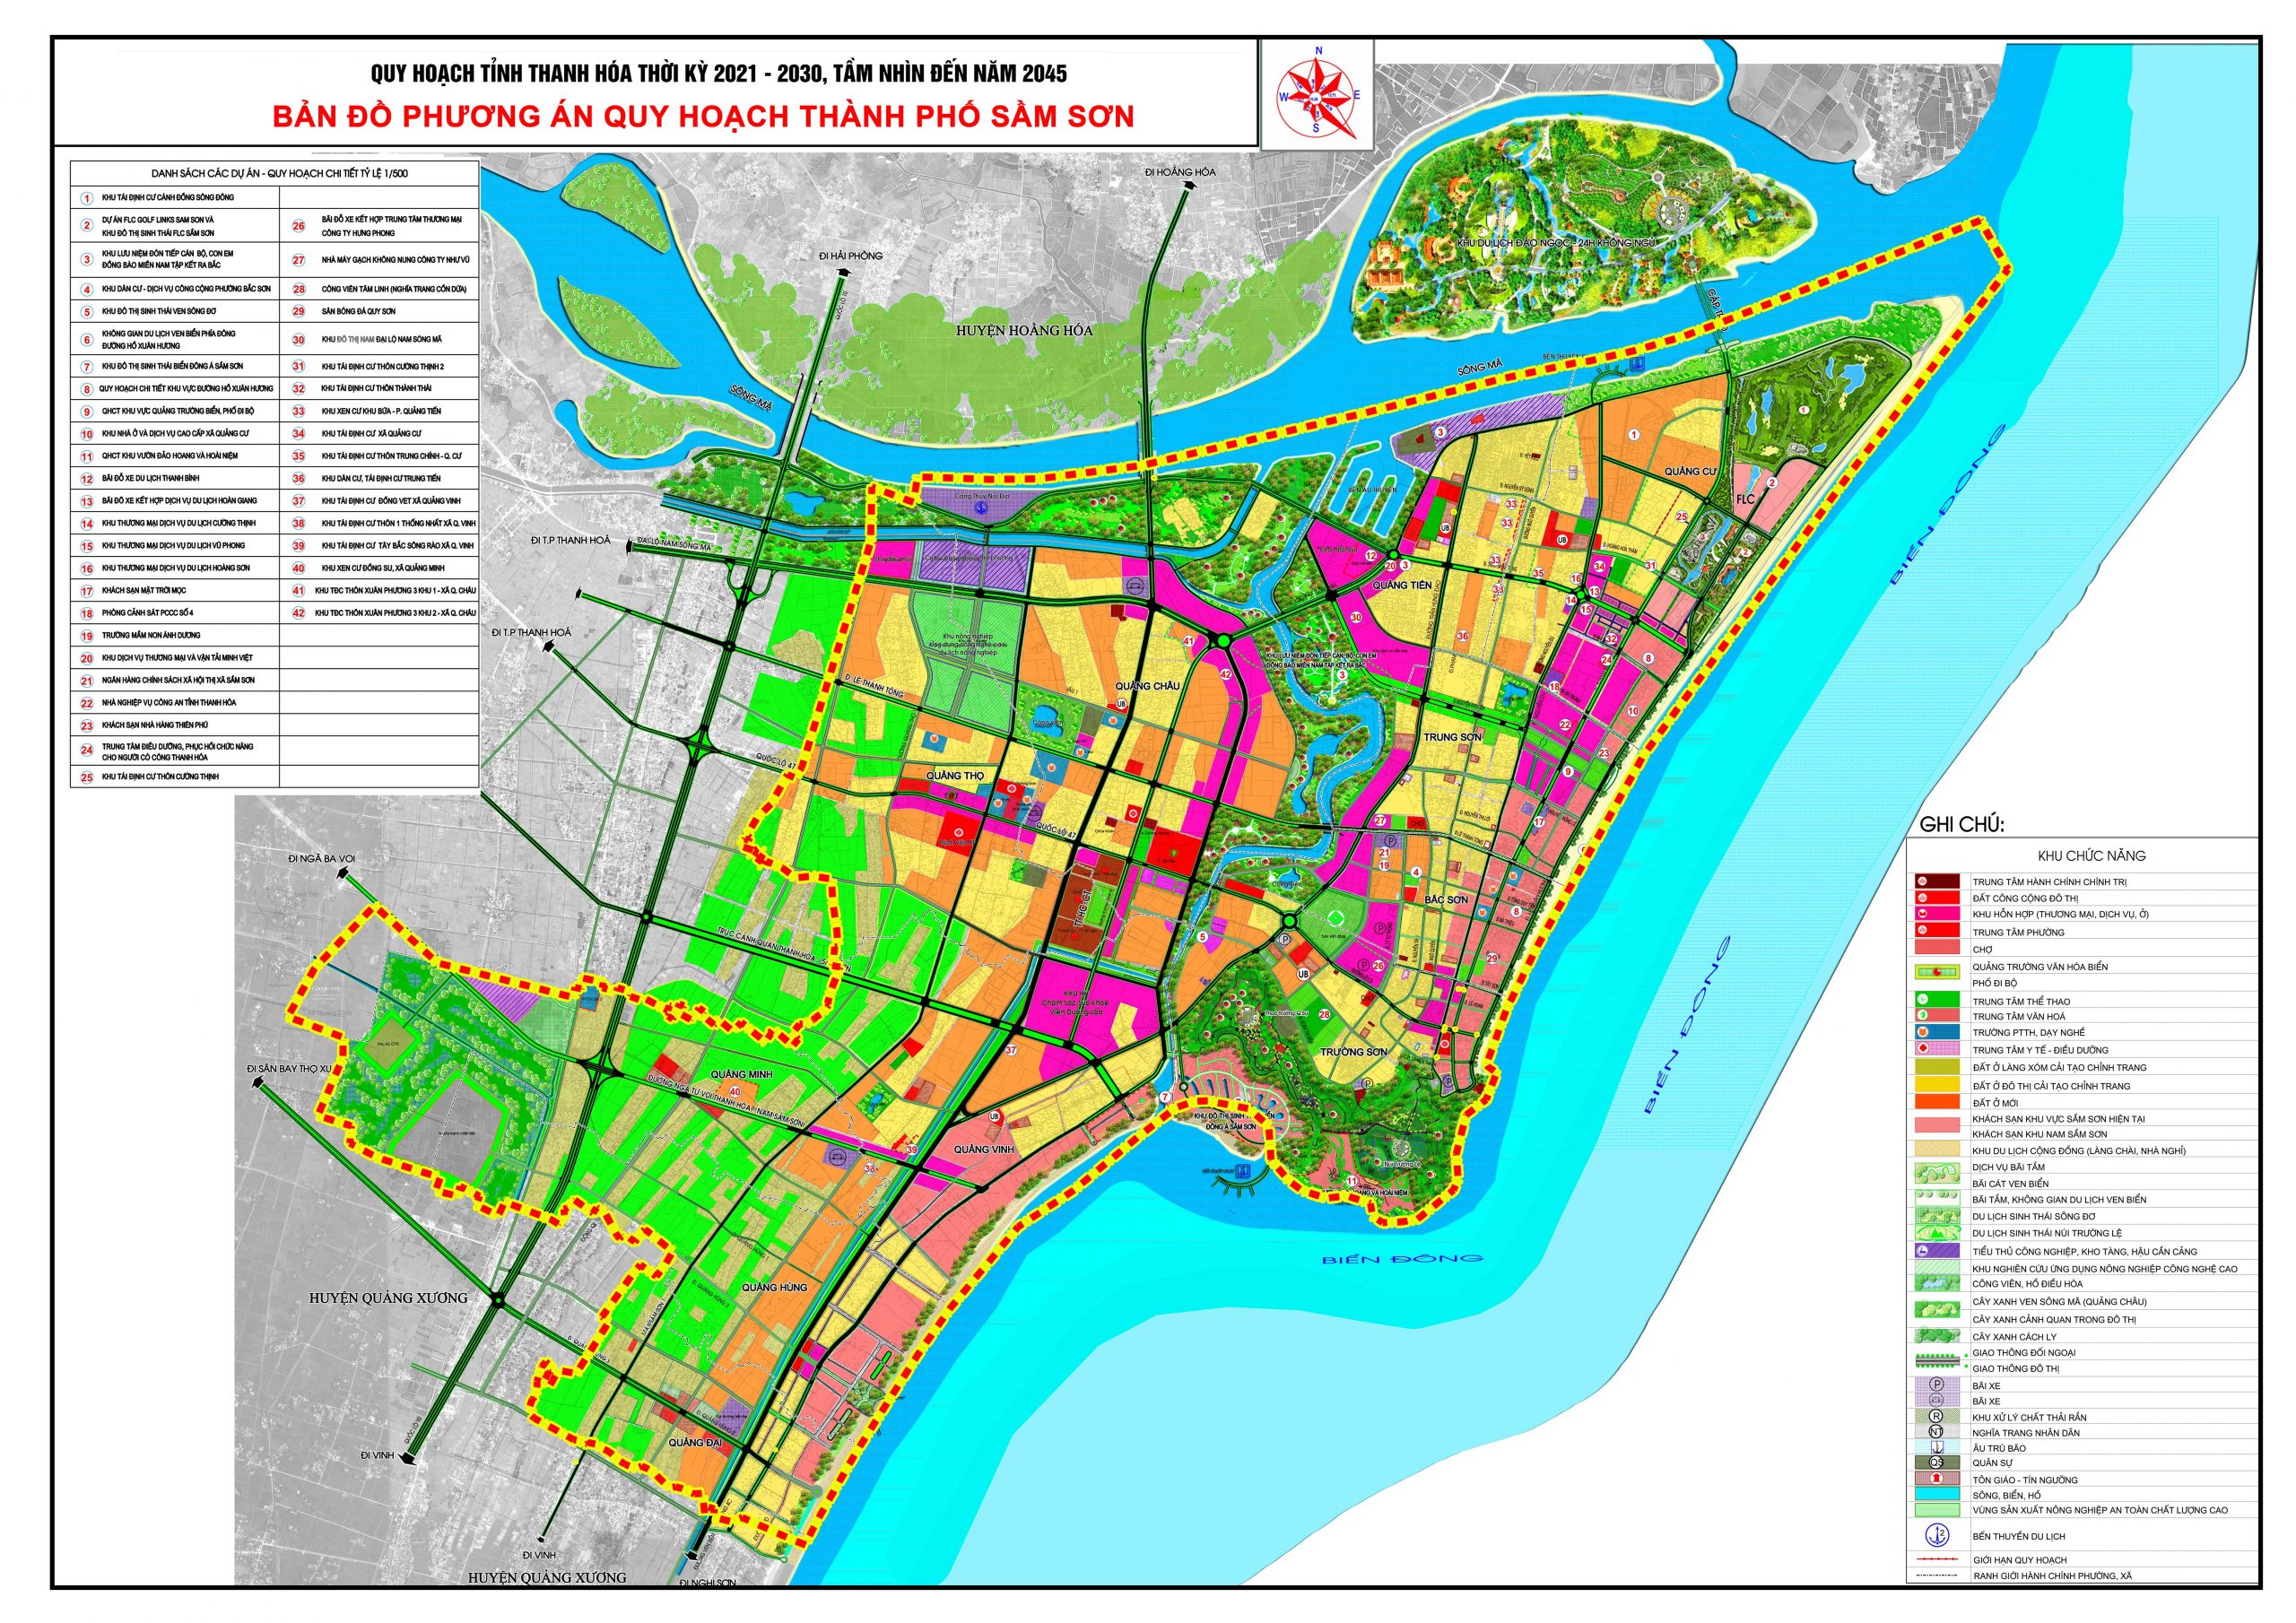 Bản đồ phương án quy hoạch thành phố Sầm Sơn